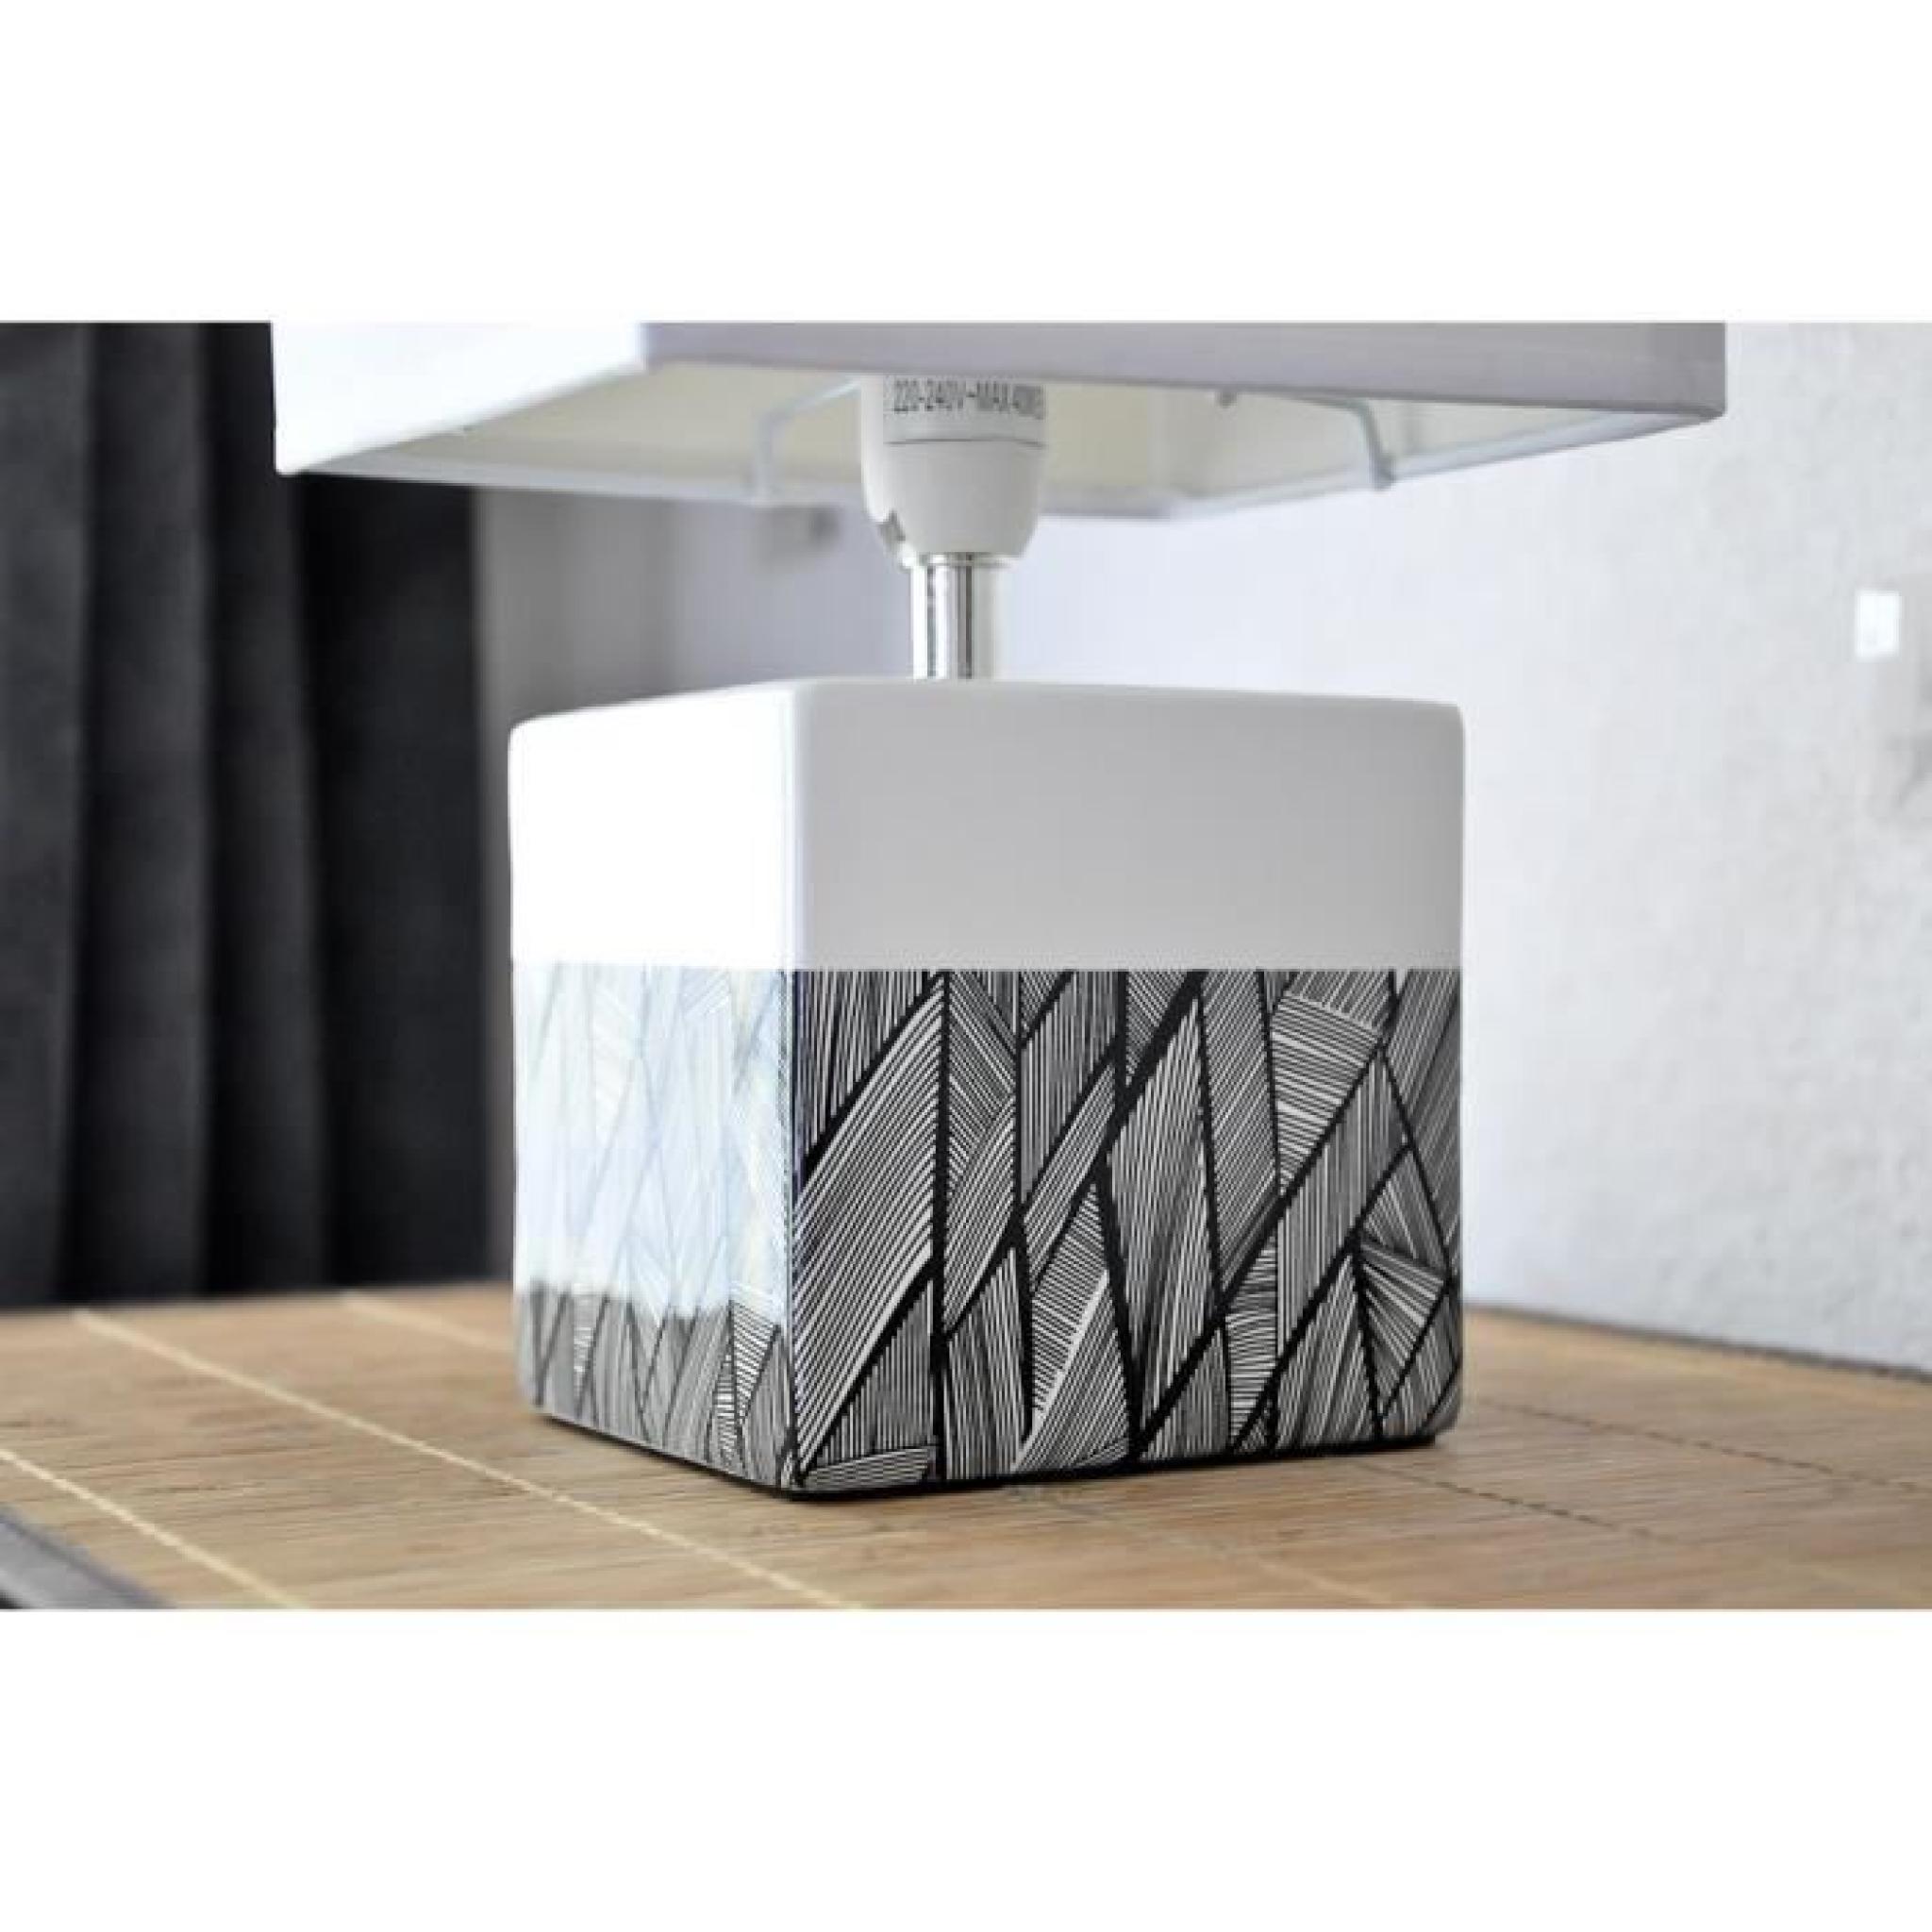 Lampe cube design INTERIOR graphismes noir et blanc pas cher